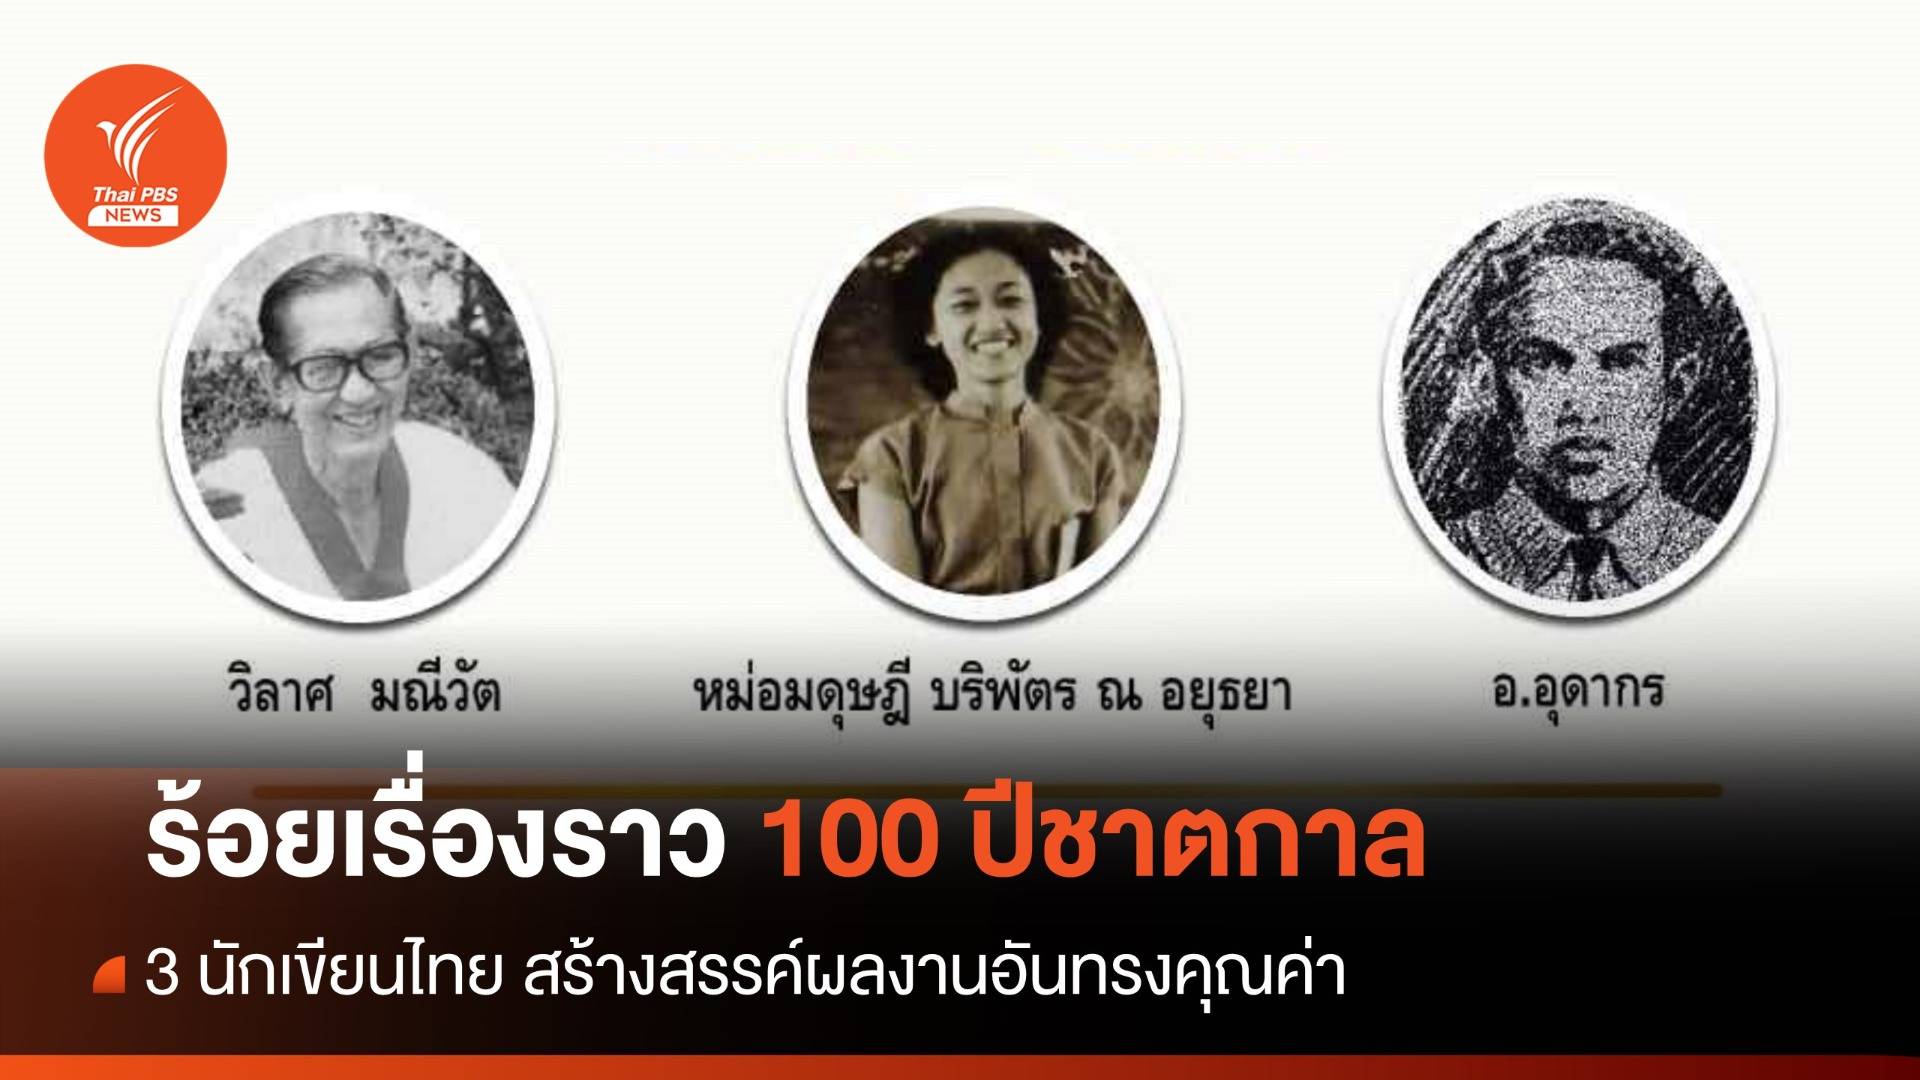 ร้อยเรื่องราว 100 ปีชาตกาล "3 นักเขียนไทย"